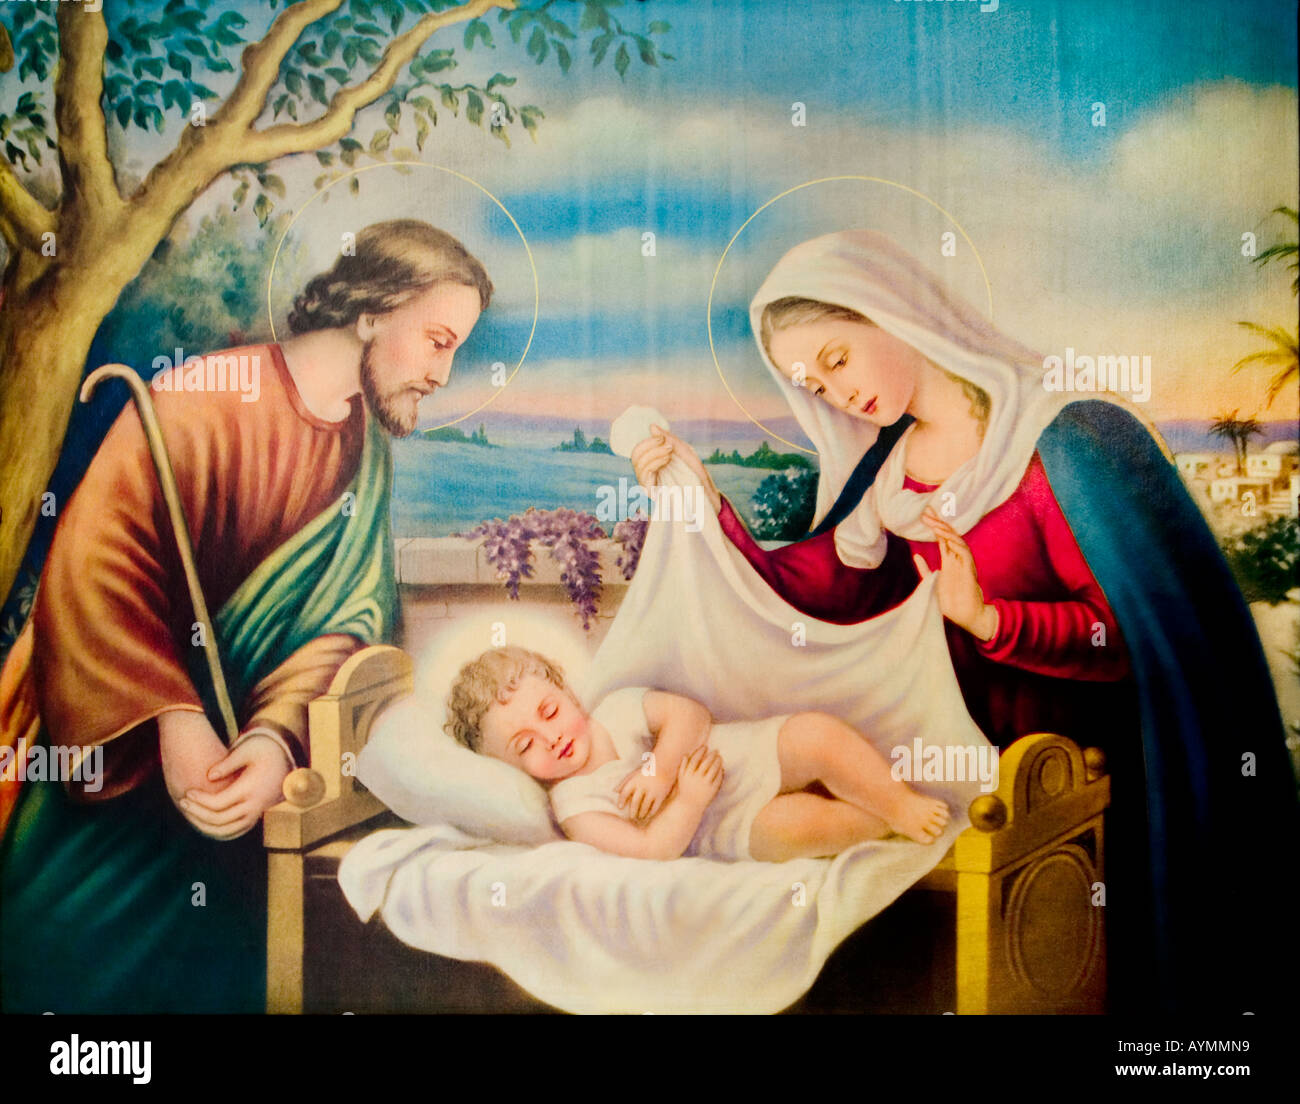 Vierge Marie et Josef sur le nouveau-né Jésus Christ d'enfant, en regardant le bébé Holly. Ciel et les arbres en arrière-plan Banque D'Images